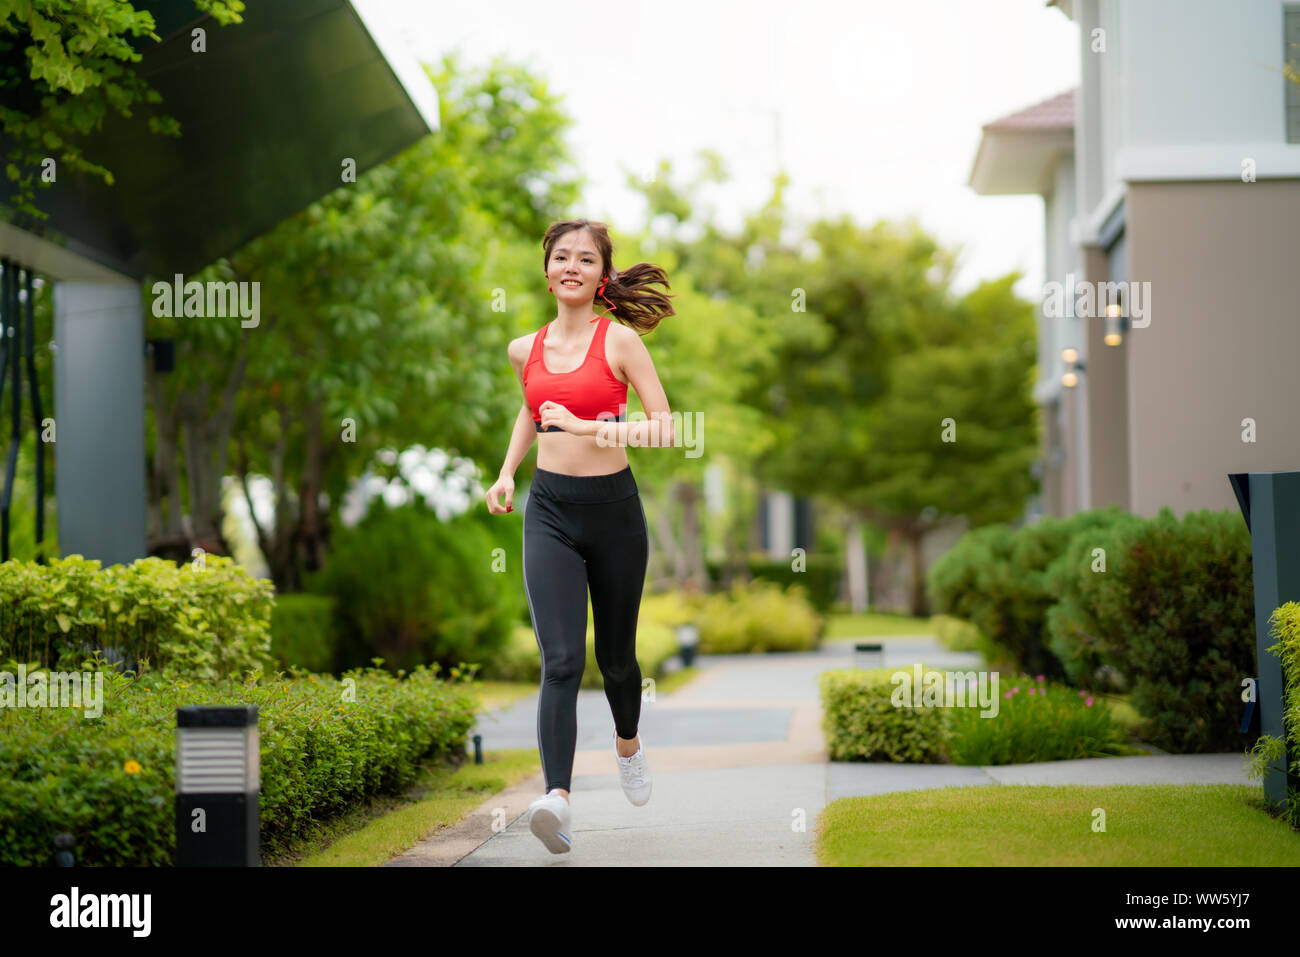 Le jogging woman running in village de soleil sur beau jour d'été. Modèle d'origine asiatique, sport de plein air formation pour le marathon. Banque D'Images